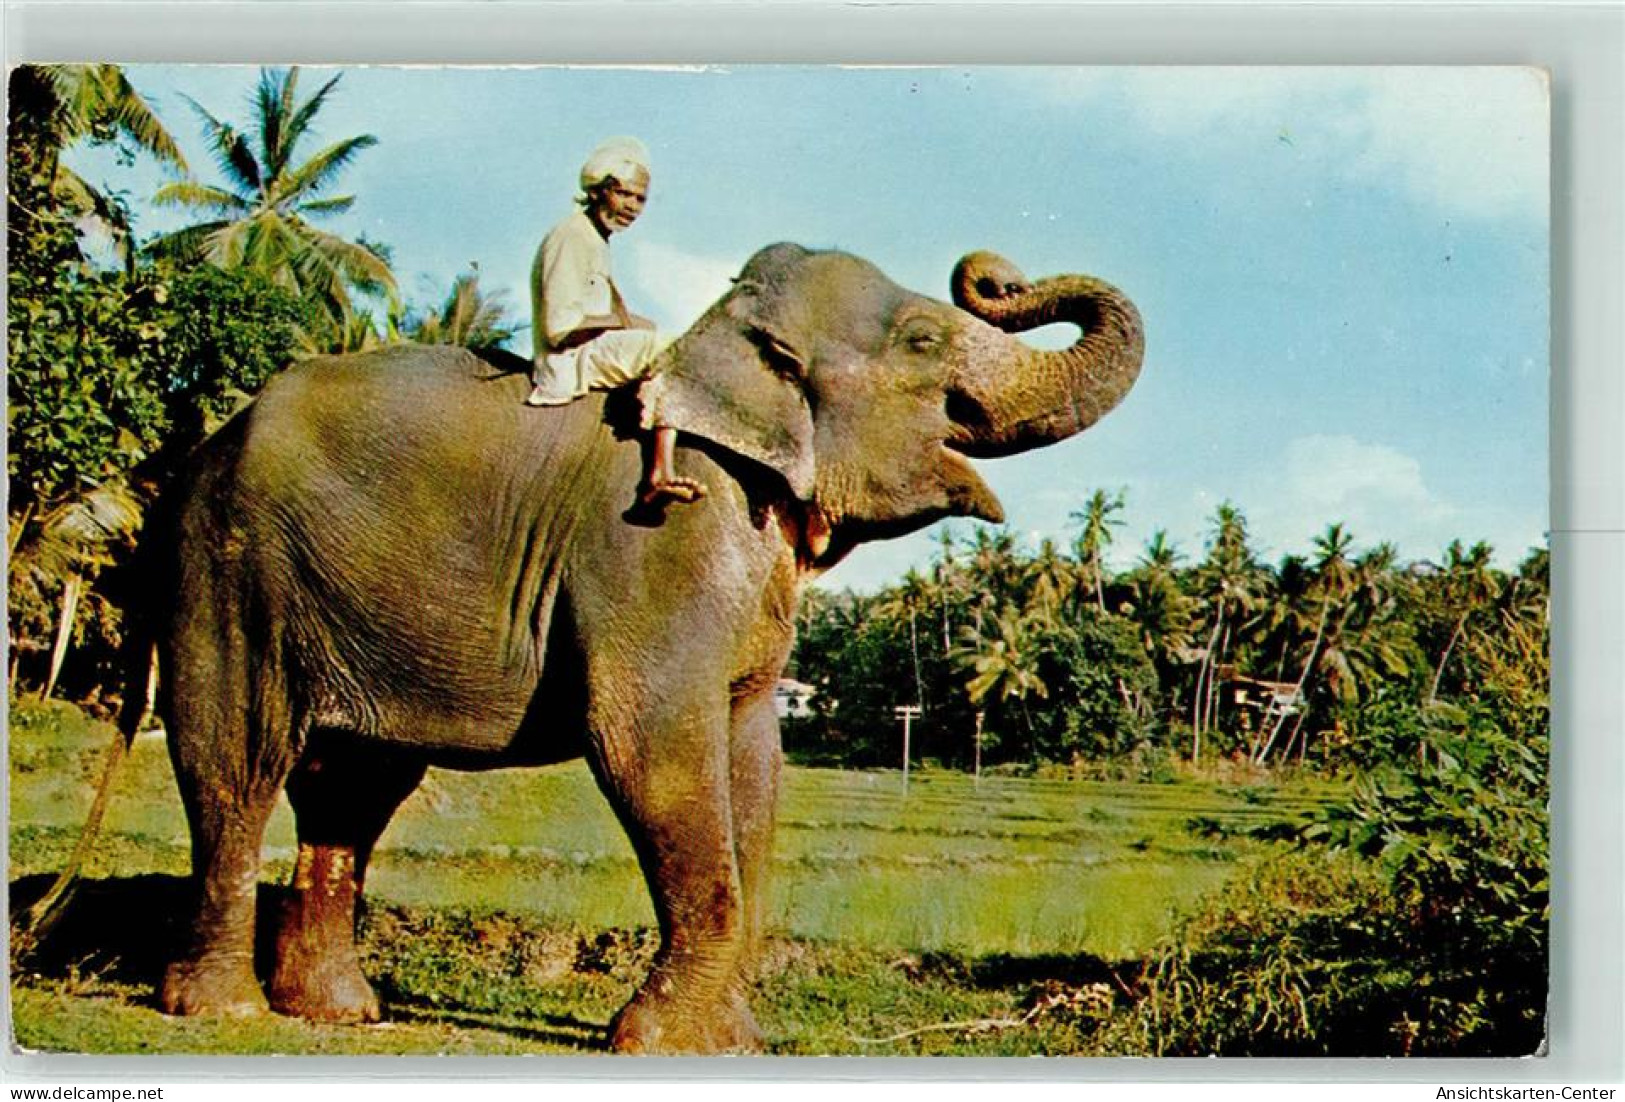 39281406 - Plantagen Ceylon CP26 - Olifanten